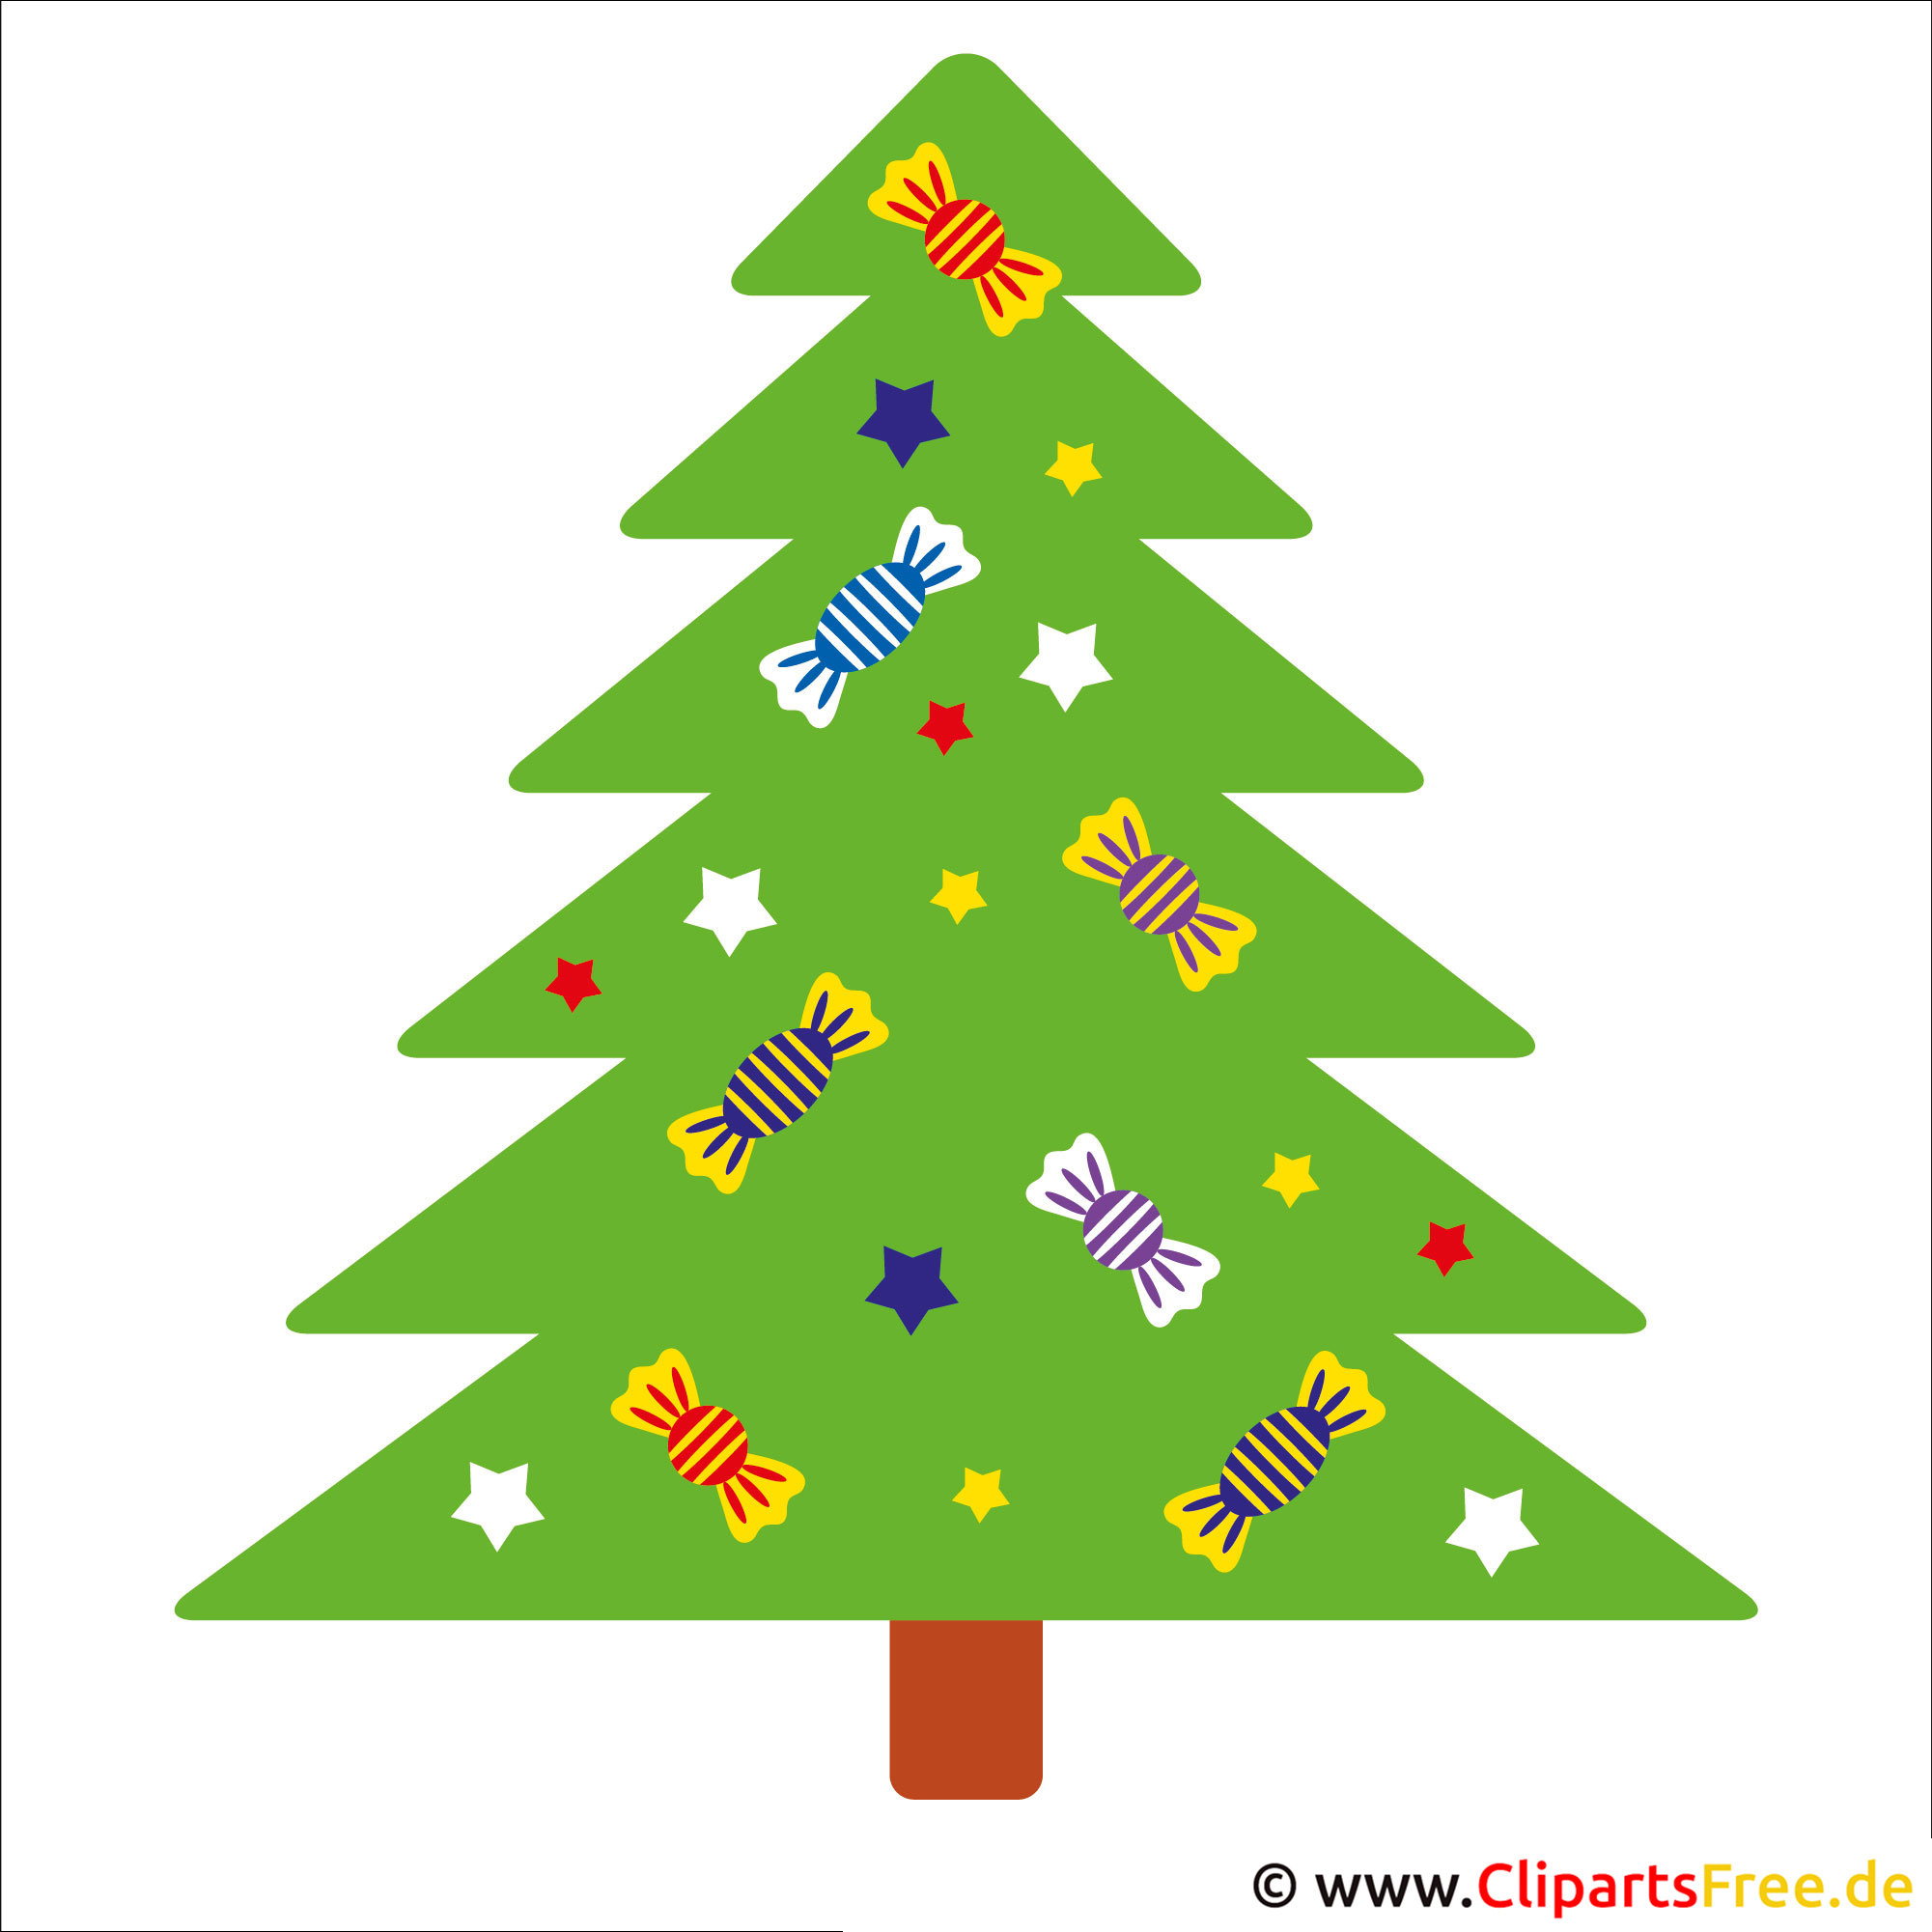 clipart weihnachten freeware - photo #16